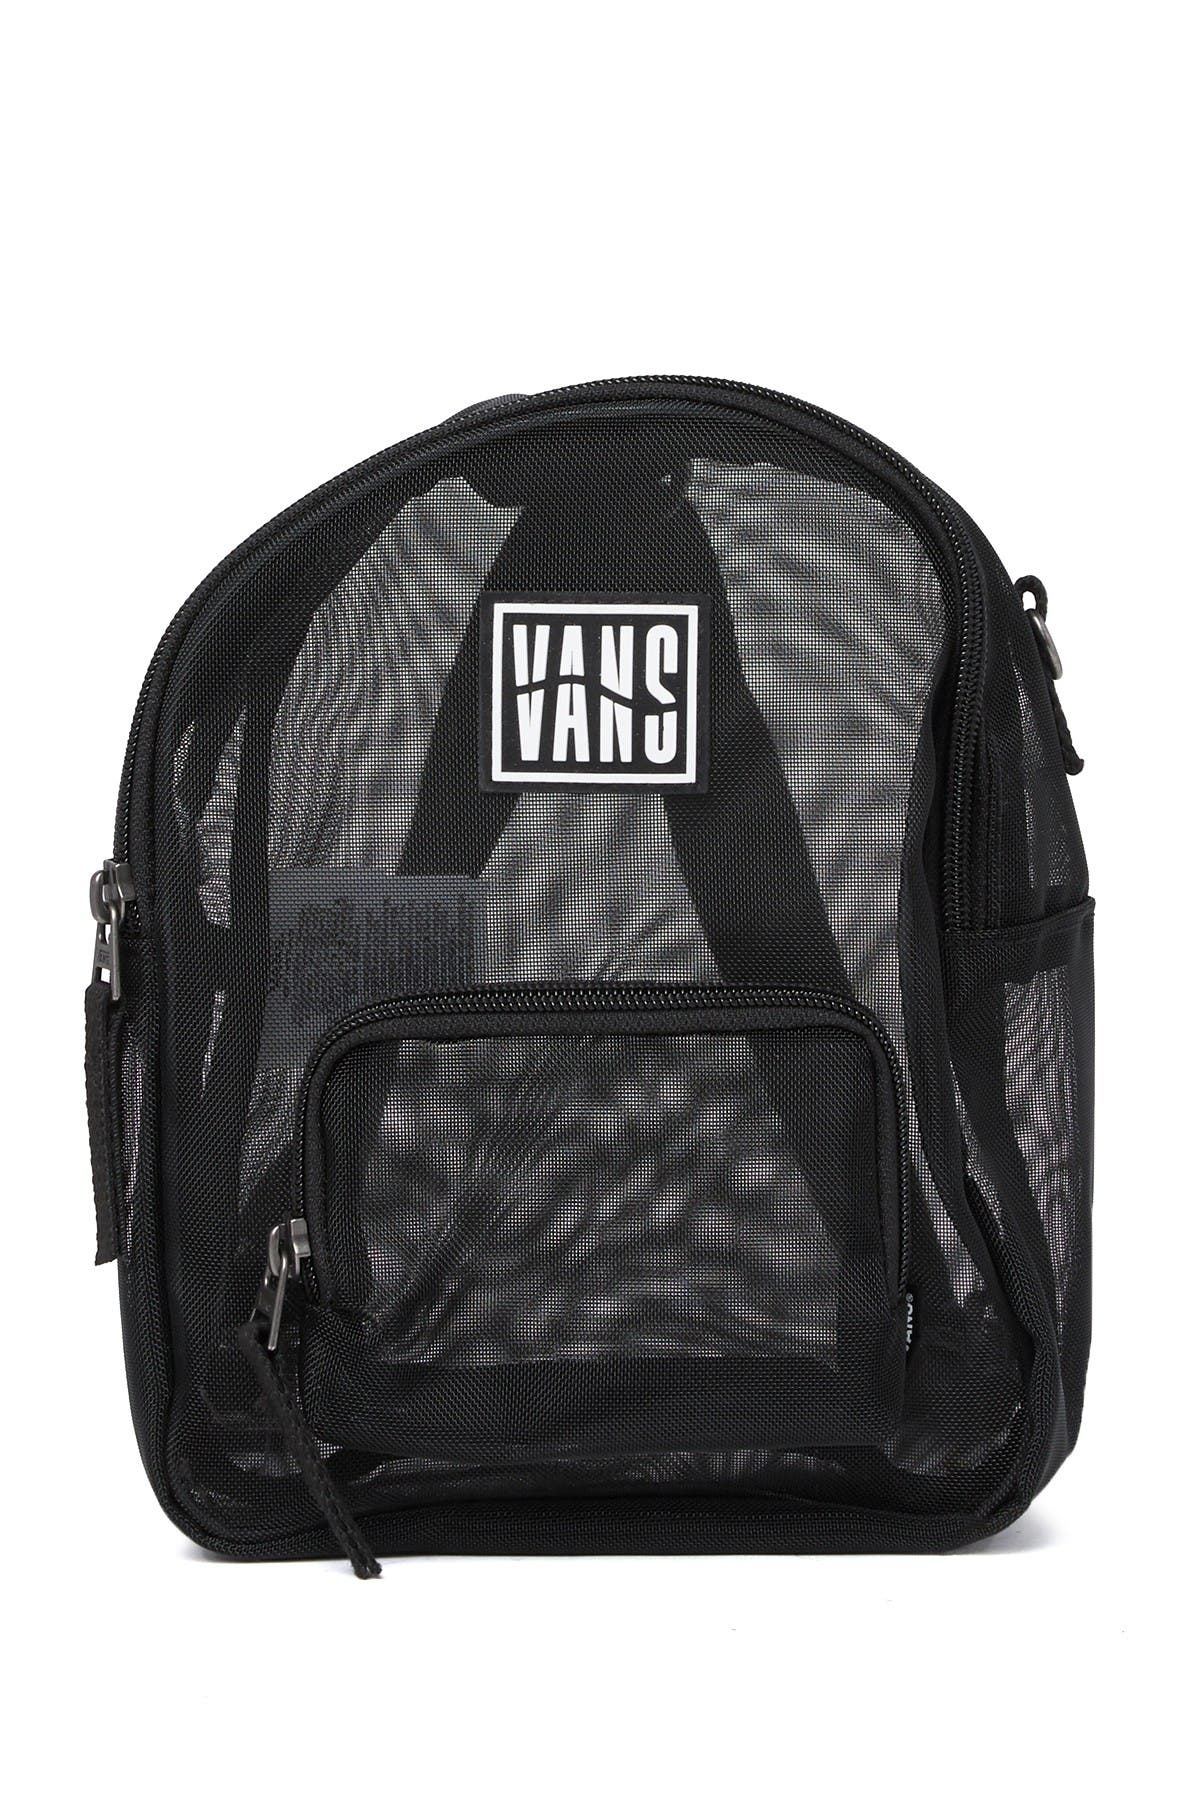 vans mesh backpack